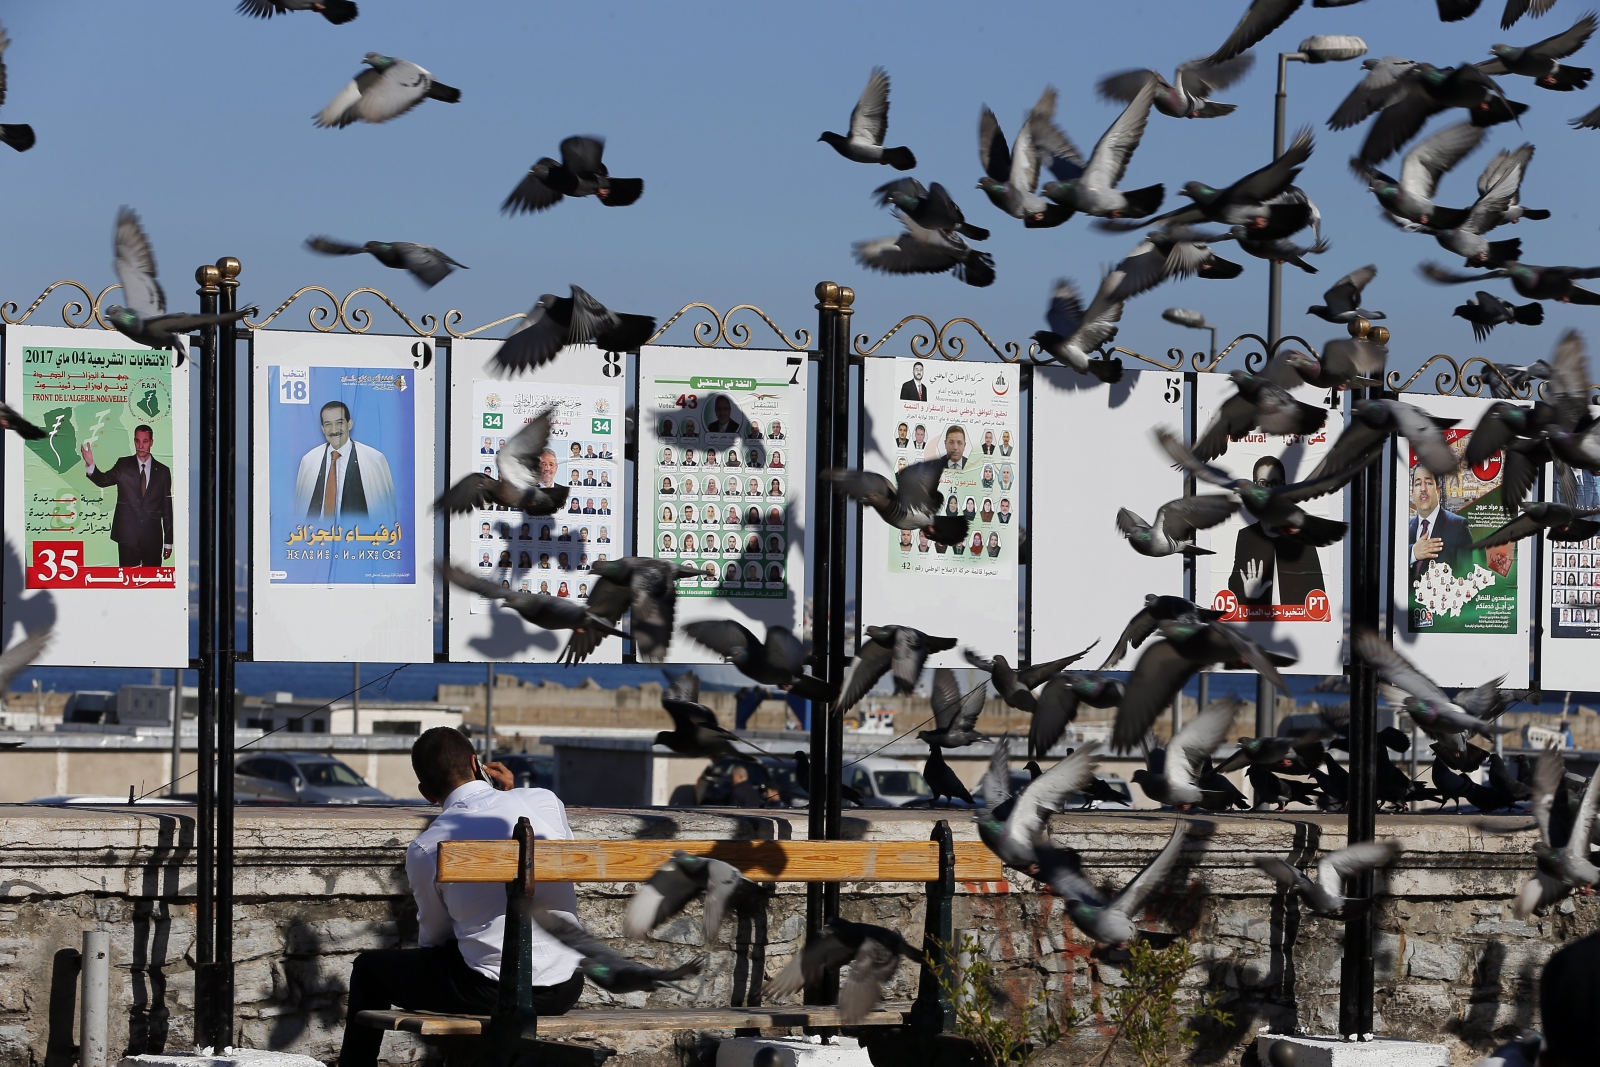 Gołębie na tle plakatów wyborczych w Algierii.